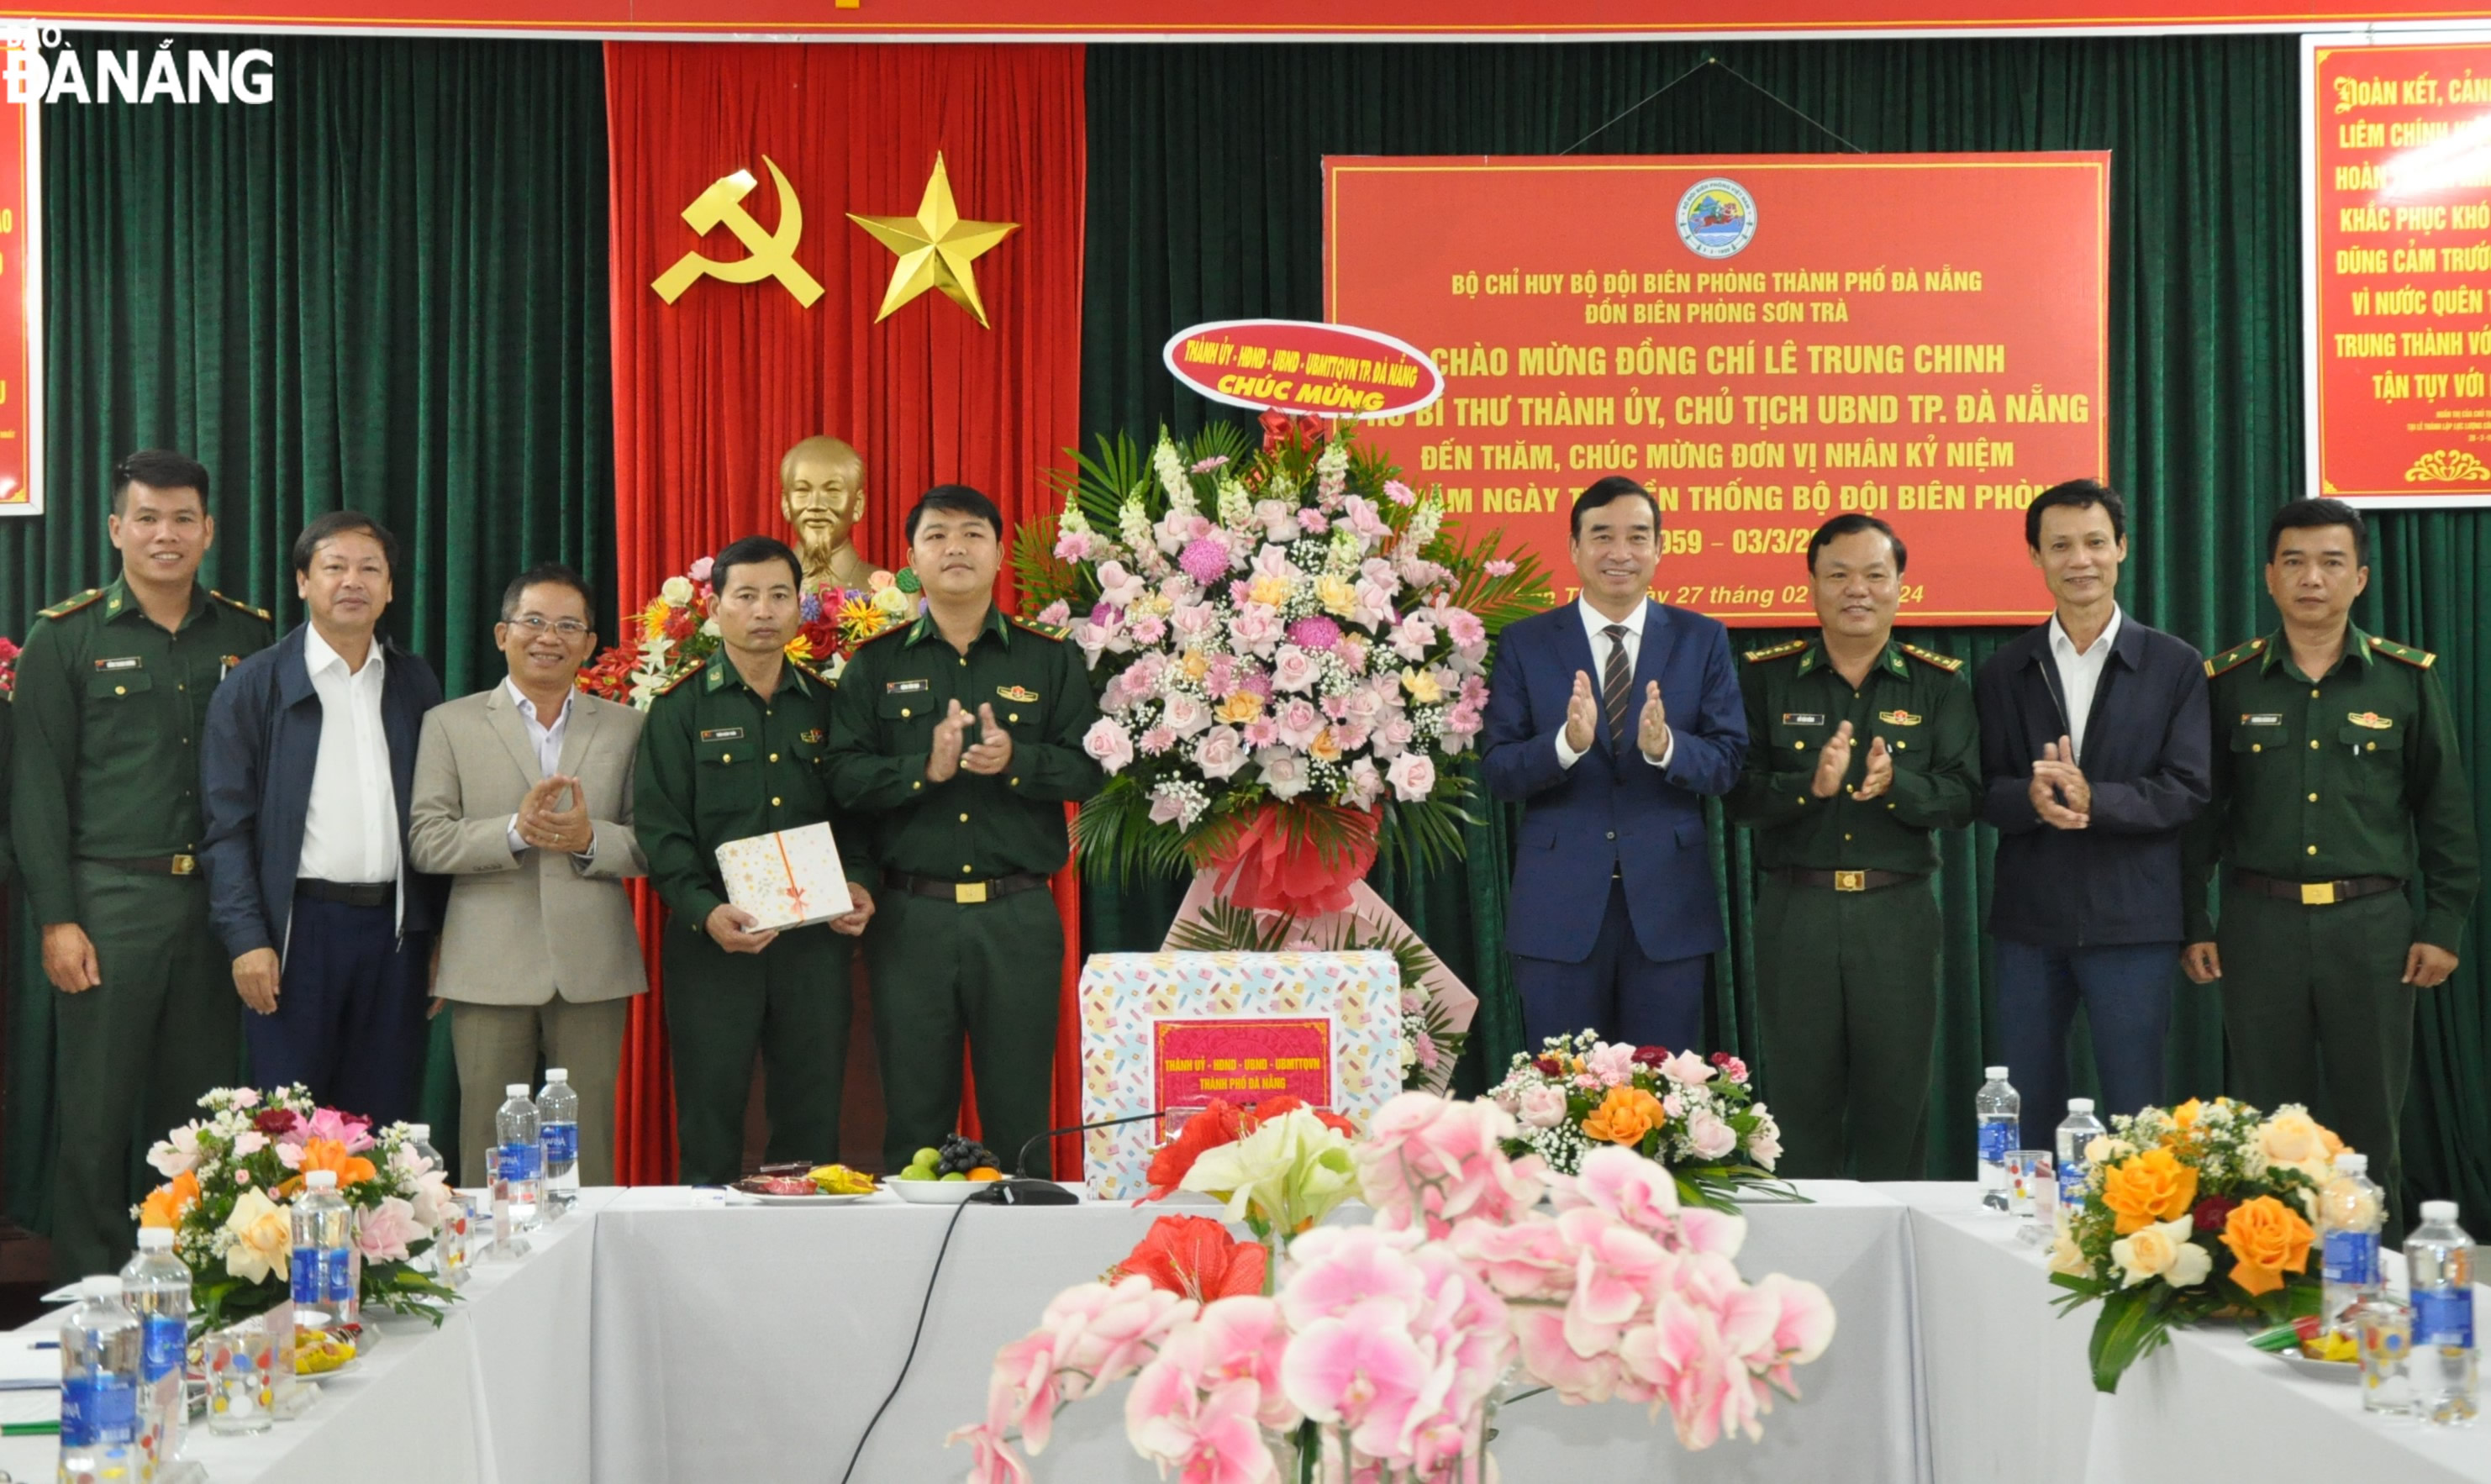 Chủ tịch UBND thành phố Lê Trung Chinh thăm, tặng hoa chúc mừng Đồn Biên phòng Sơn Trà. Ảnh: LÊ HÙNG